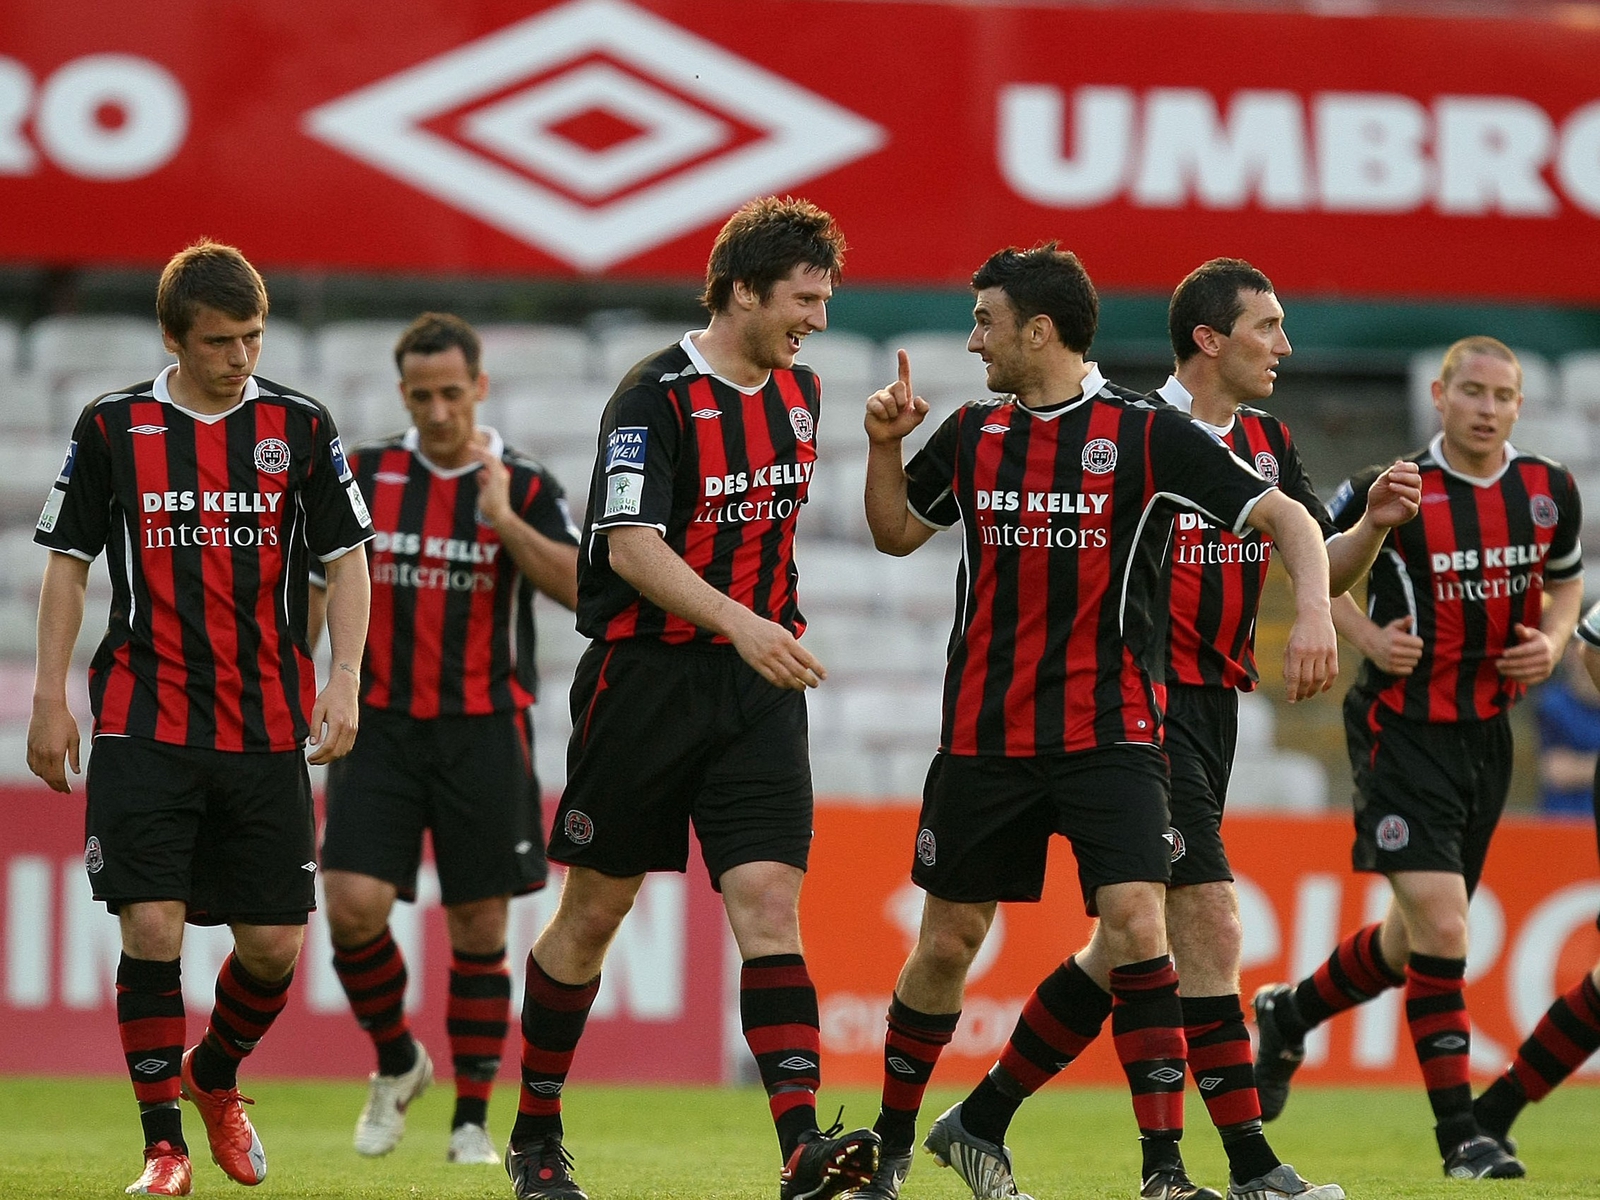 Cork City 1-1 Drogheda United, Highlights